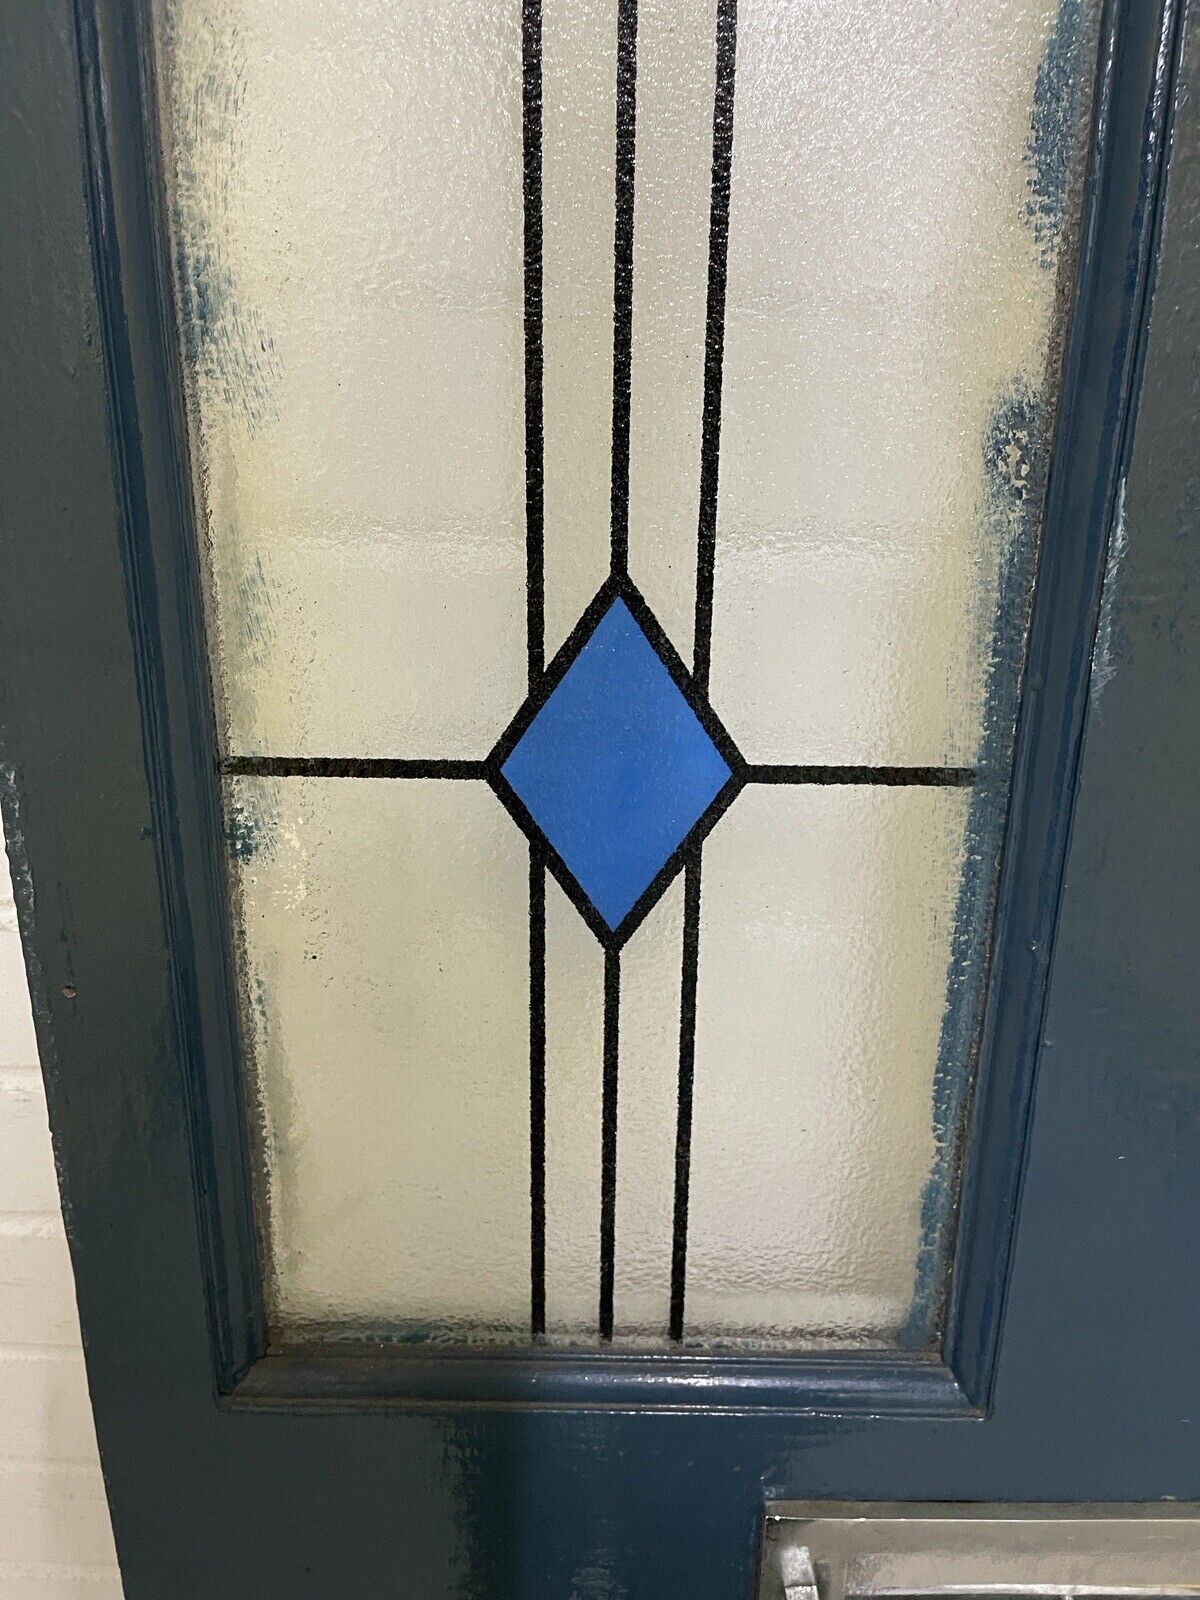 Reclaimed Victorian Wooden Panel External Front Door 2023 x 811mm